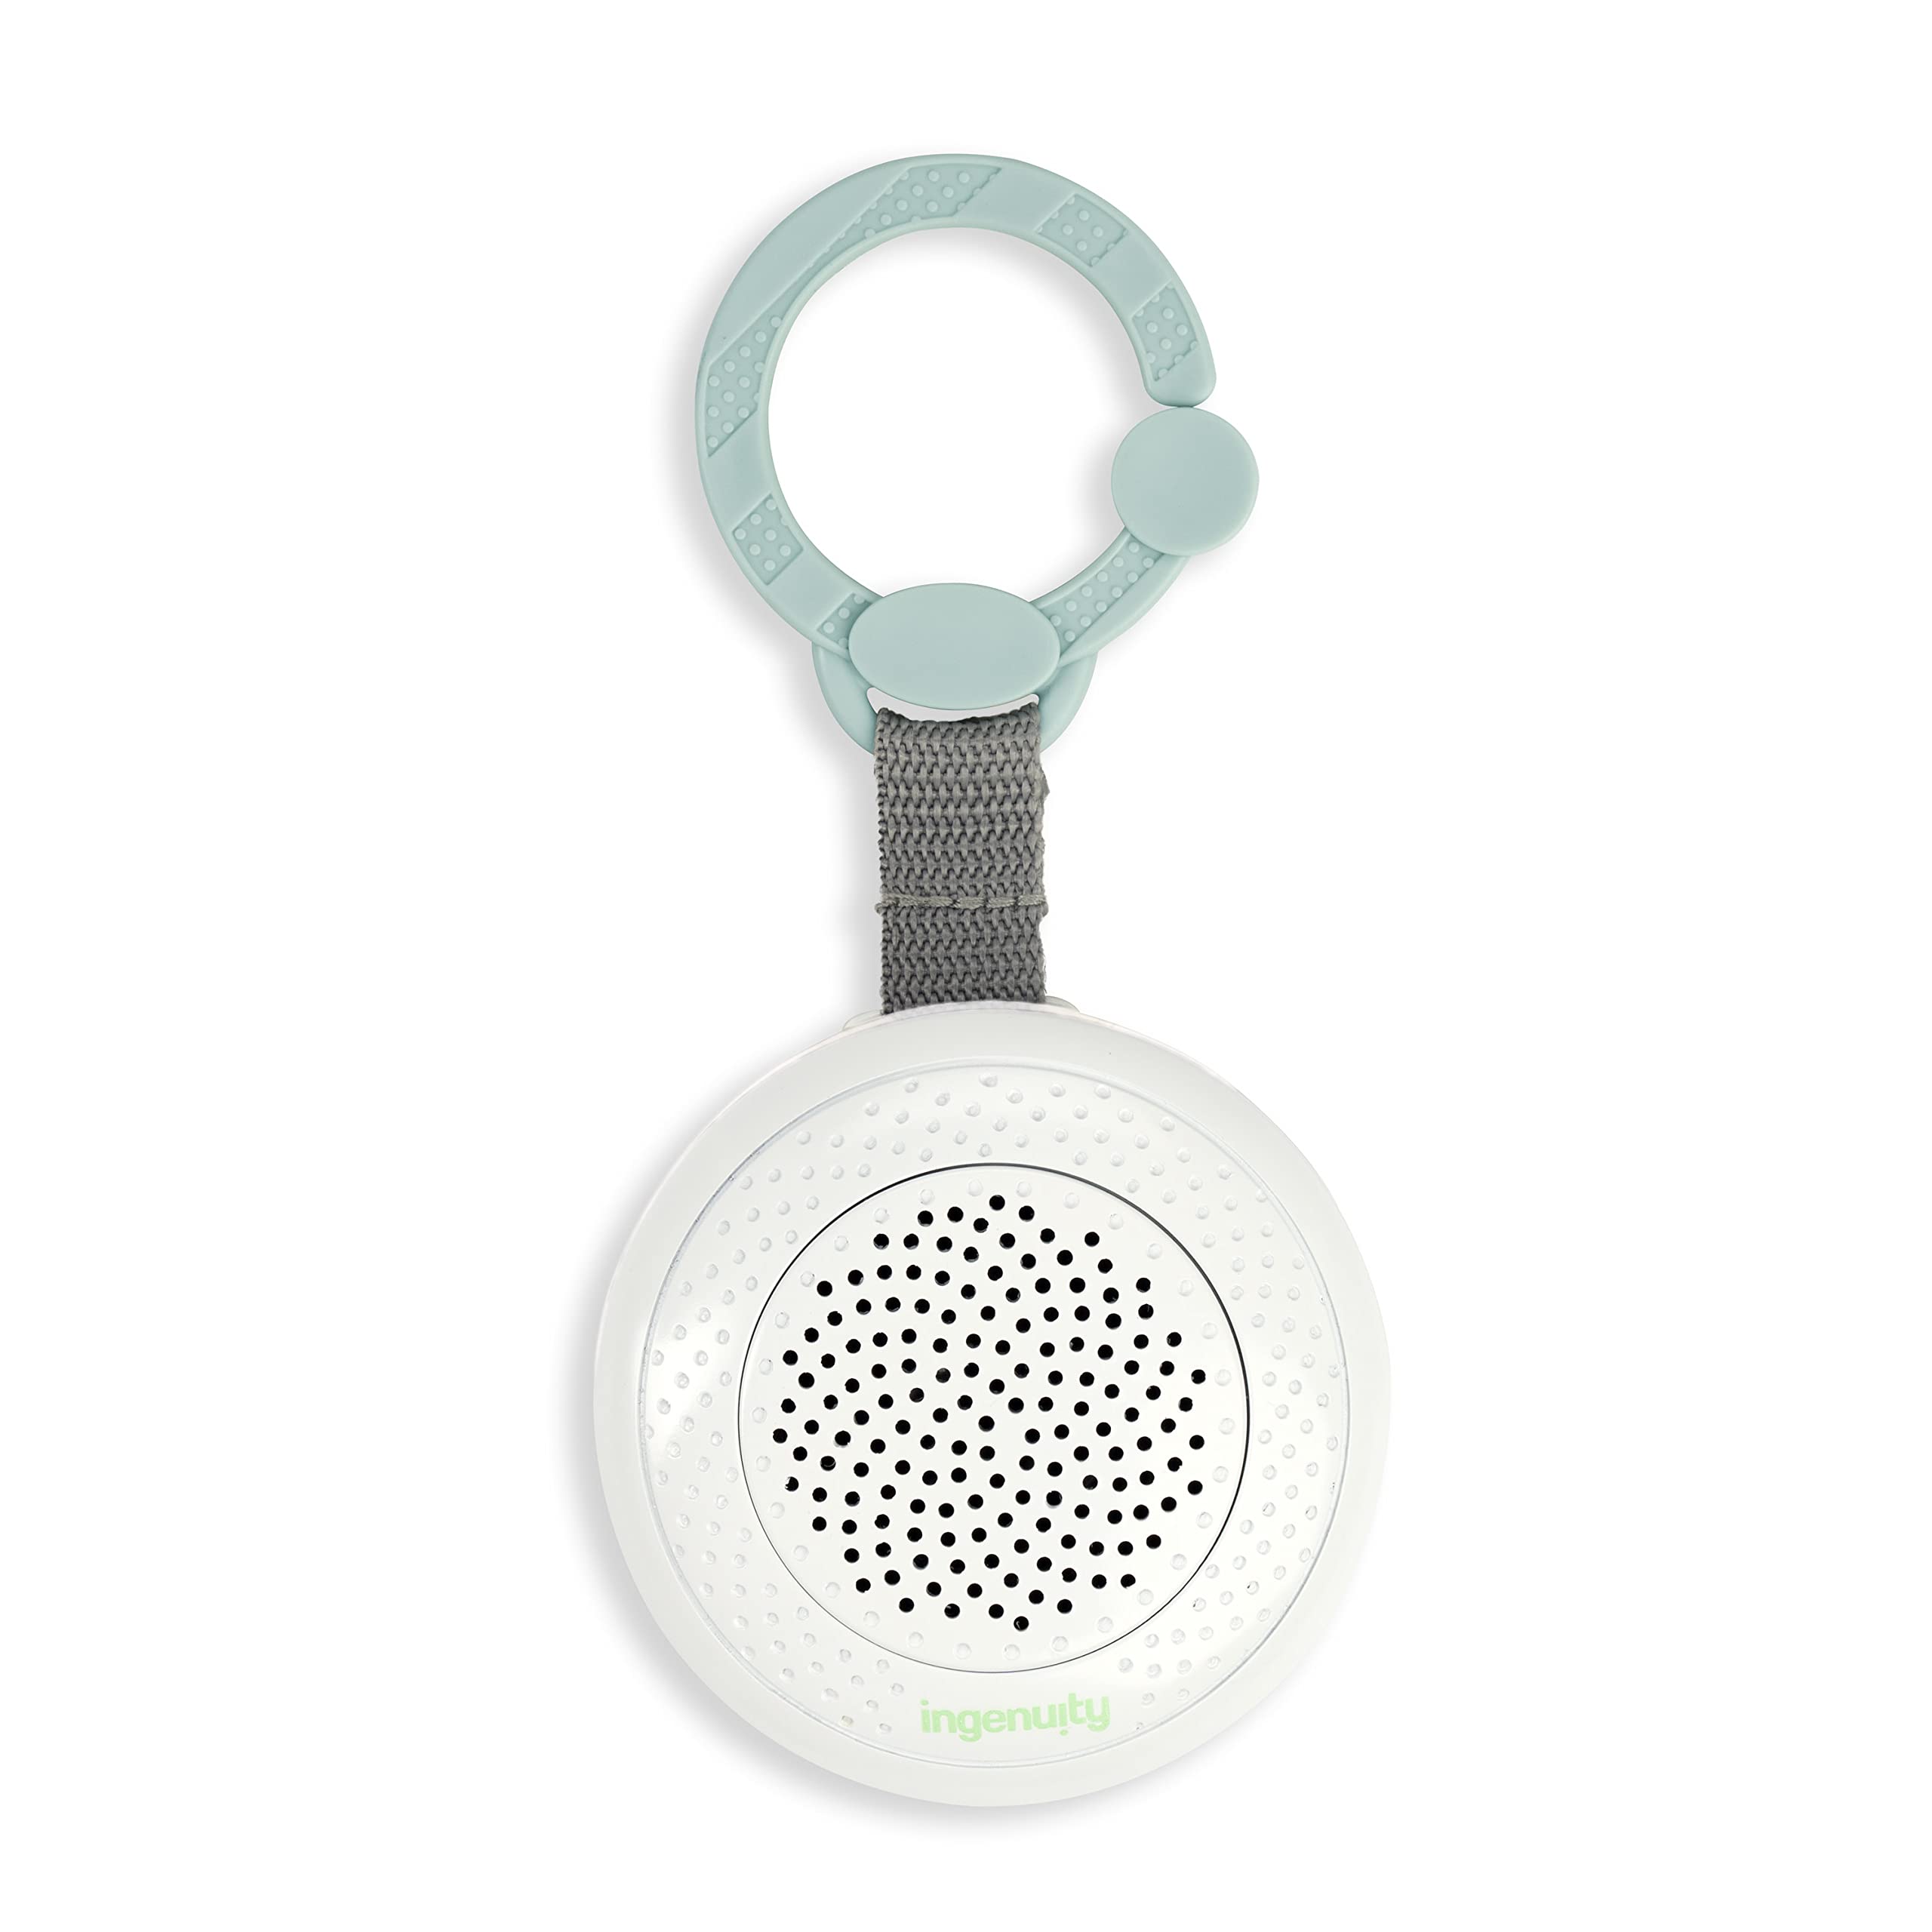 Ingenuity Pock-a-Bye Baby-Beruhiger und Bluetooth-Lautsprecher, Streamen Sie Musik oder vorgeladene Playlists